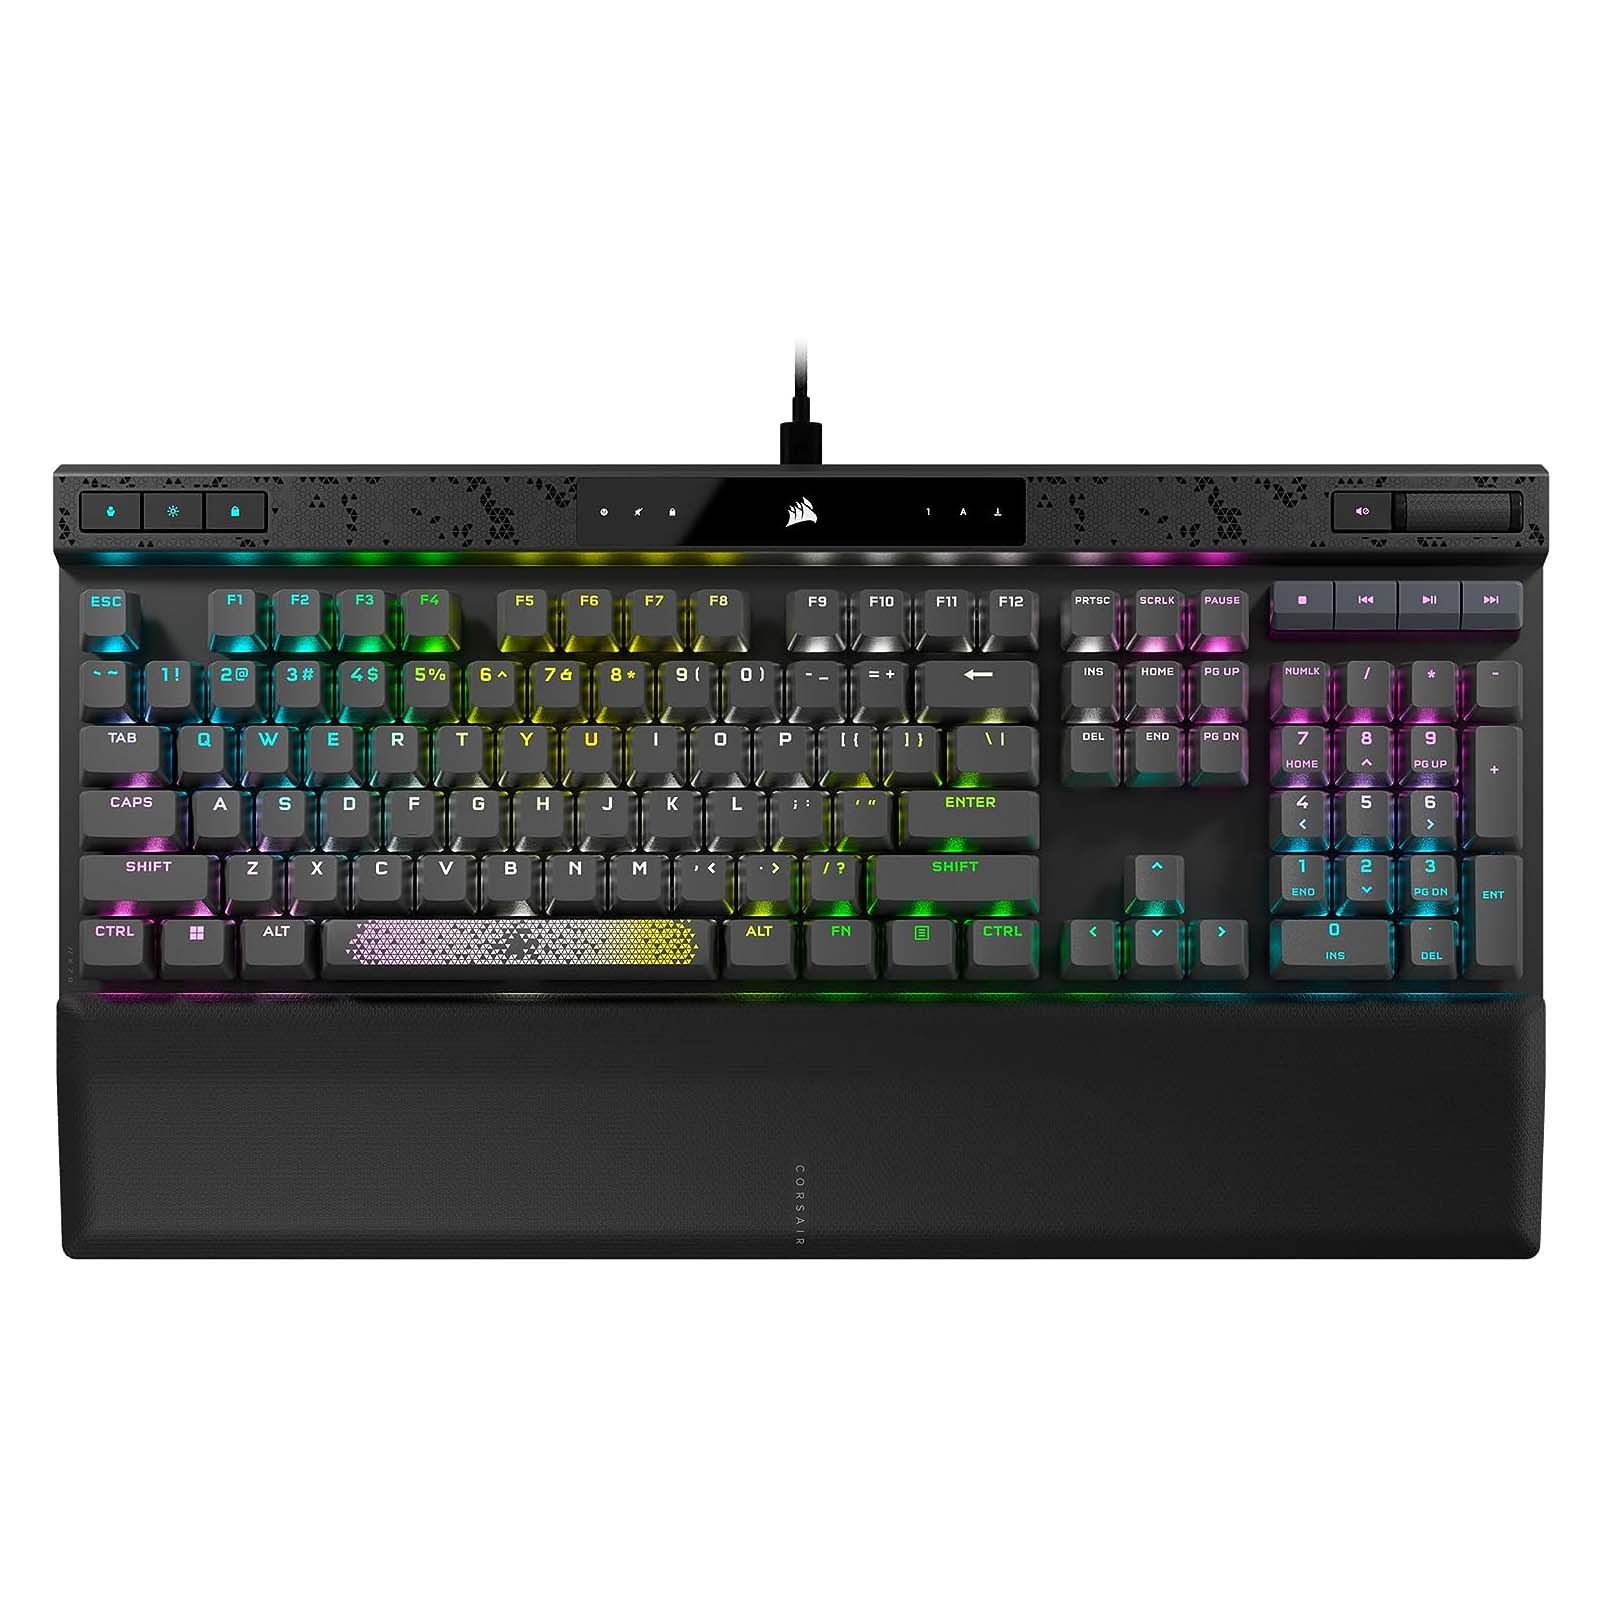 Игровая клавиатура Corsair K70 Max, Corsair MGX, черный, английская раскладка игровая клавиатура corsair k70 max corsair mgx английская раскладка чёрный